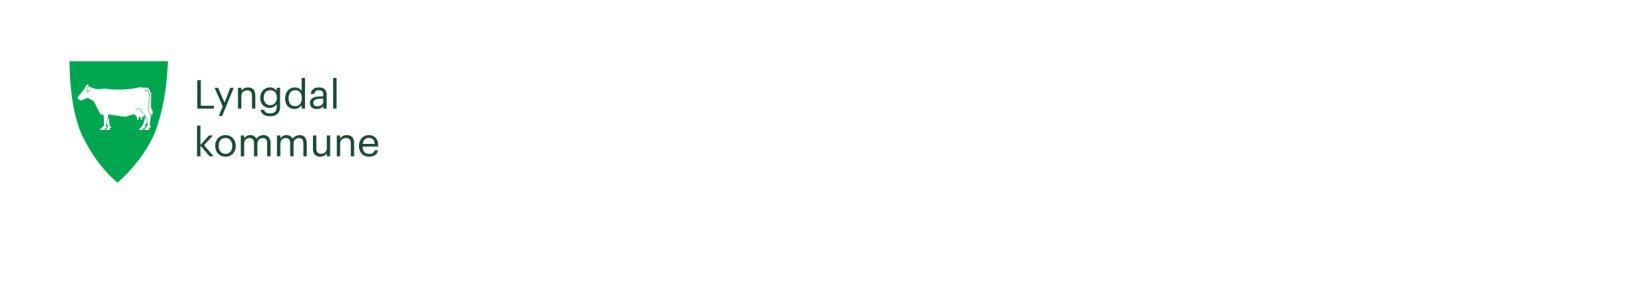 Arkiv: 122 Saksmappe: 2014/329-14198/2014 Saksbehandler: Norman Udland Dato: 27.10.2014 Høringsuttalelse til Utviklingsplan 2030 - Sørlandet sykehus Utvalg Møtedato Saksnummer Lyngdal kommunestyre 06.